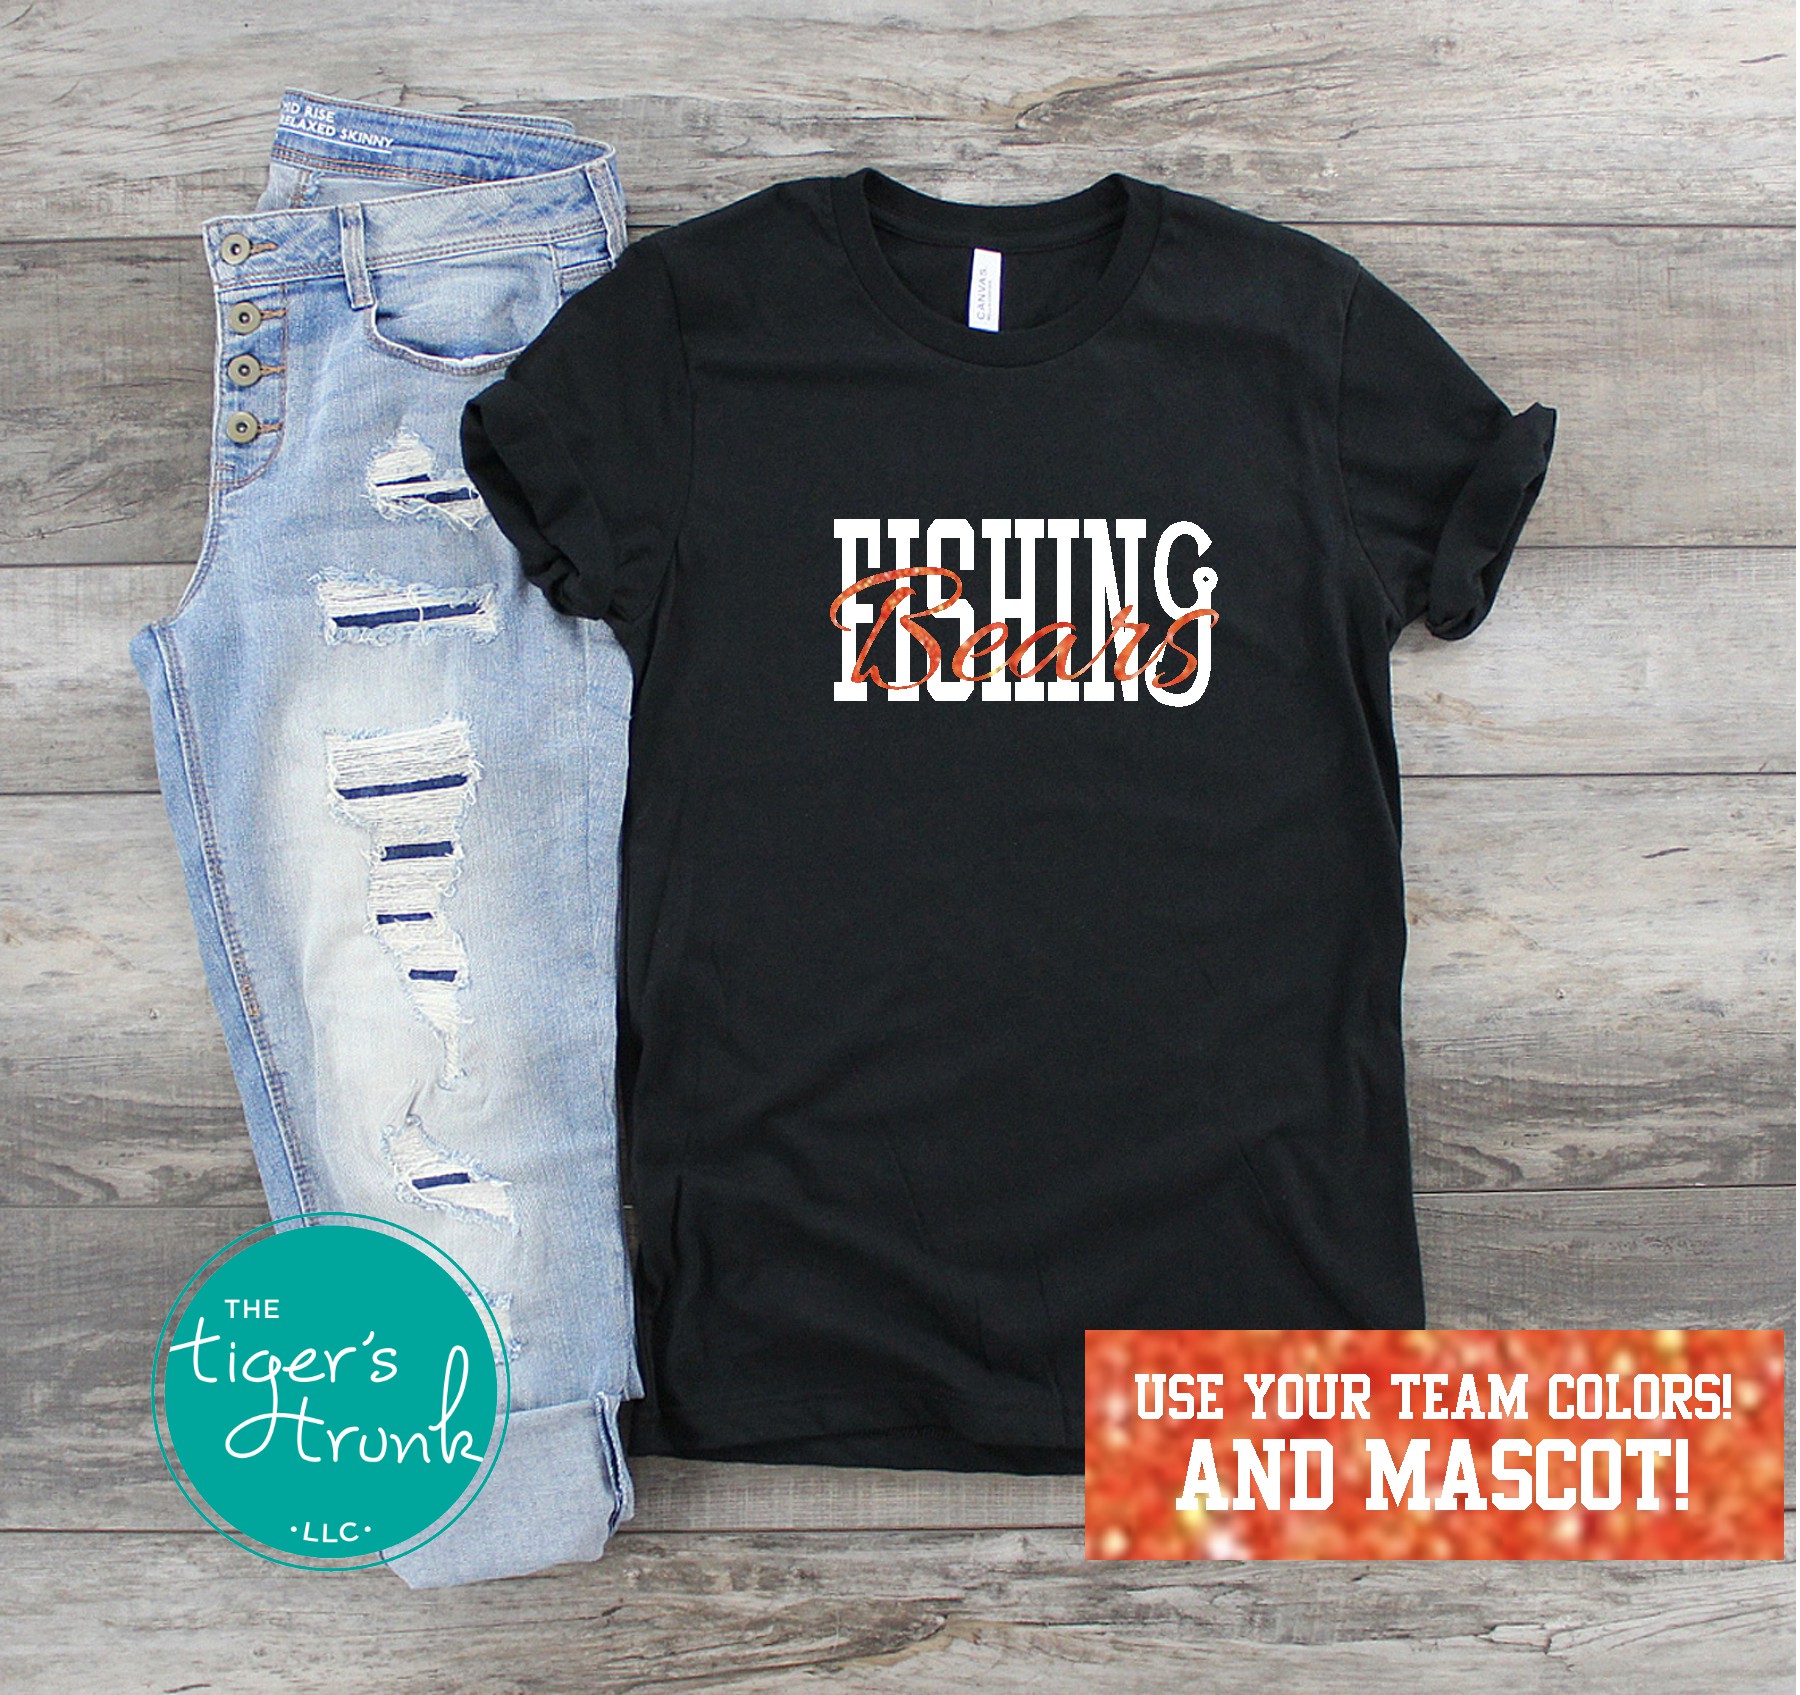 http://goimagine.com/images/detailed/2873/fishing-team-mascot-shirt-black_org.jpg